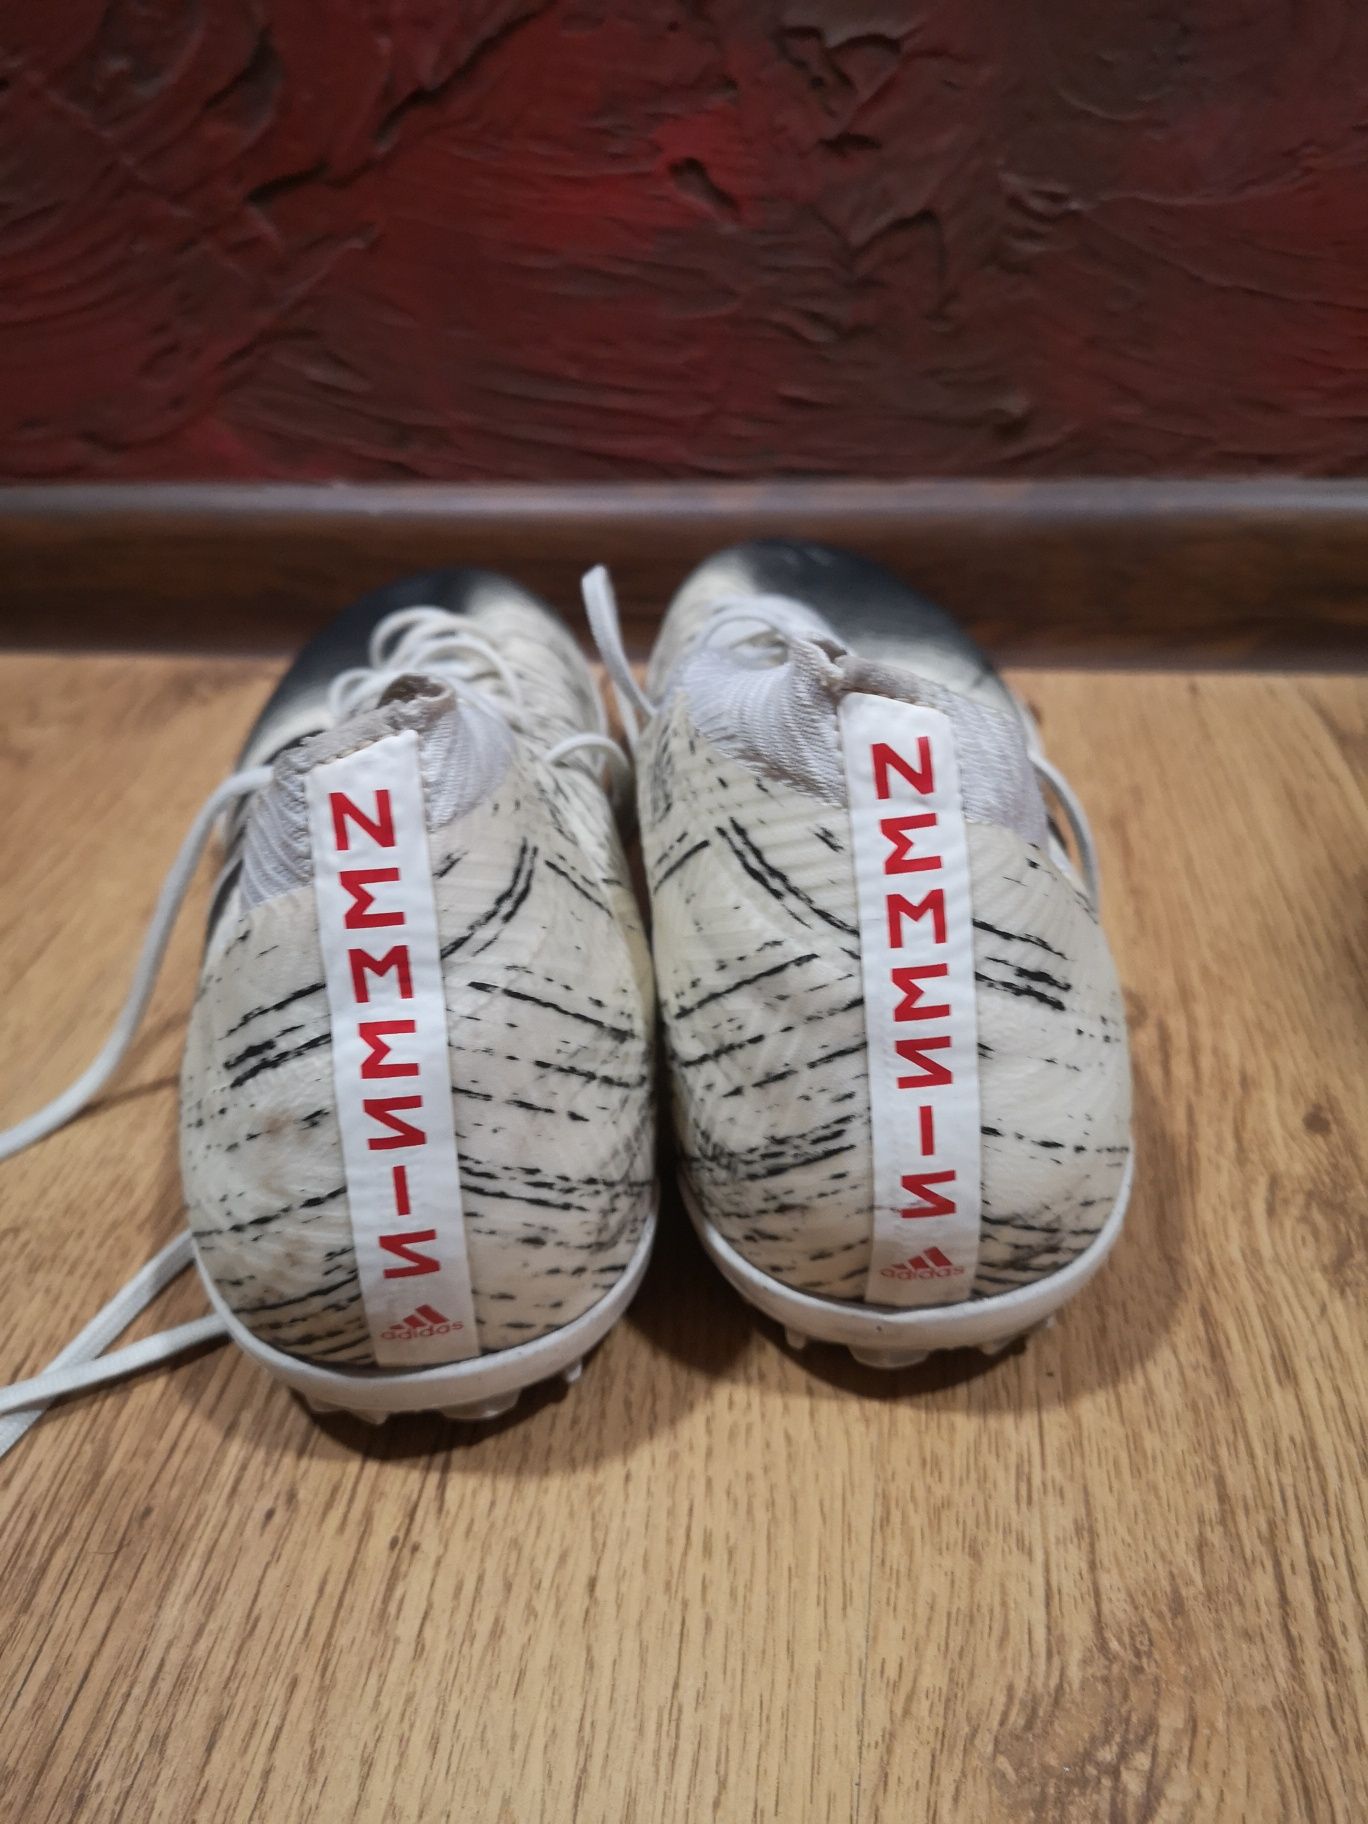 Футболни обувки (стоножки) Адидас Немезис